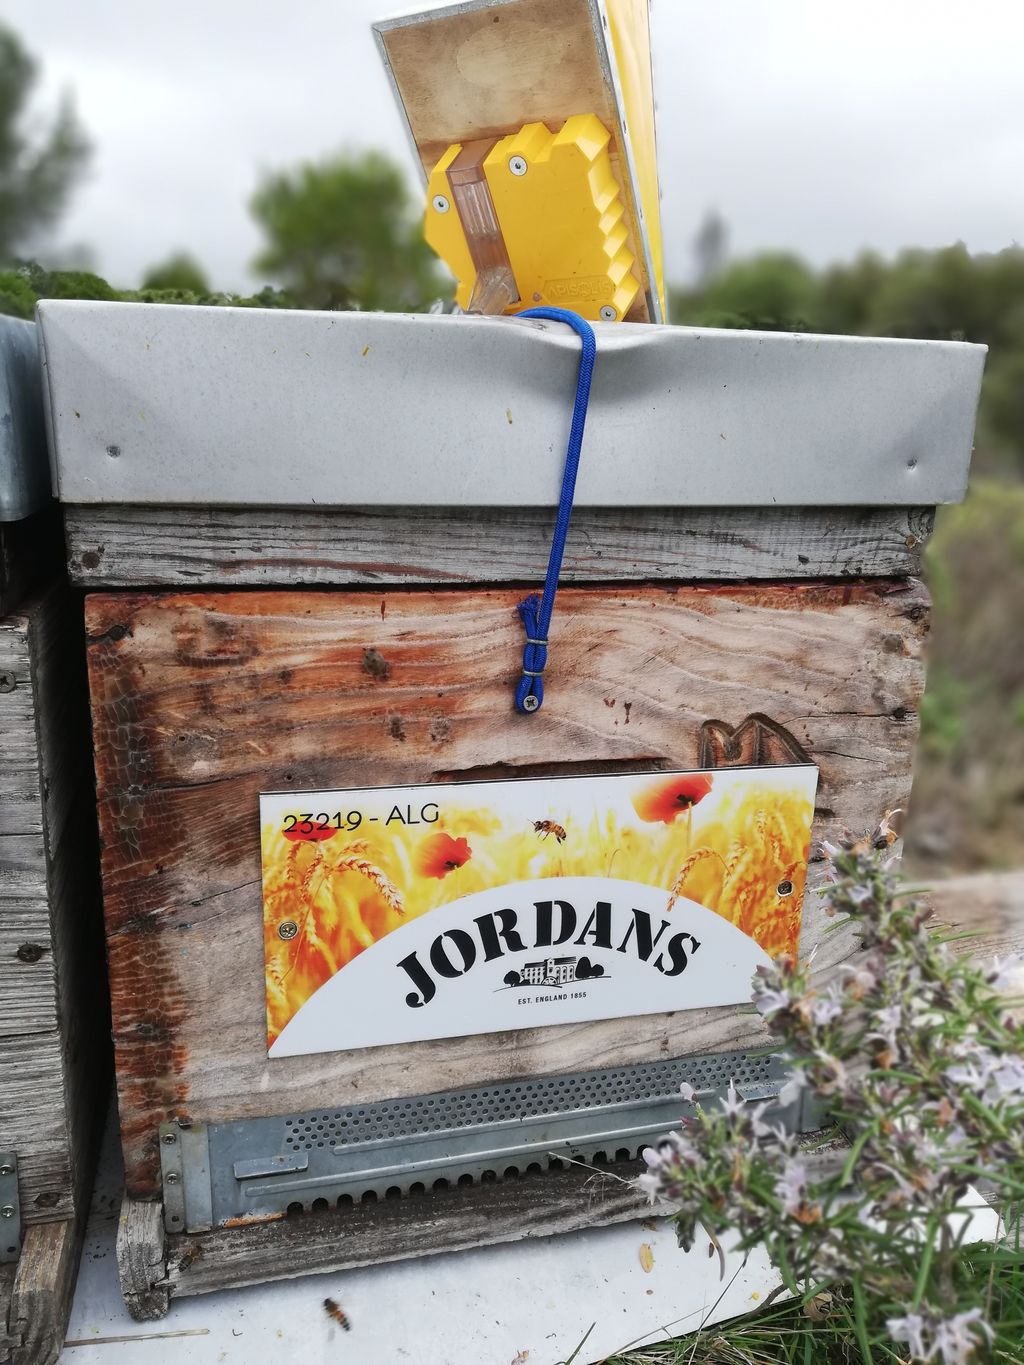 La ruche Jordans dorset ryvita